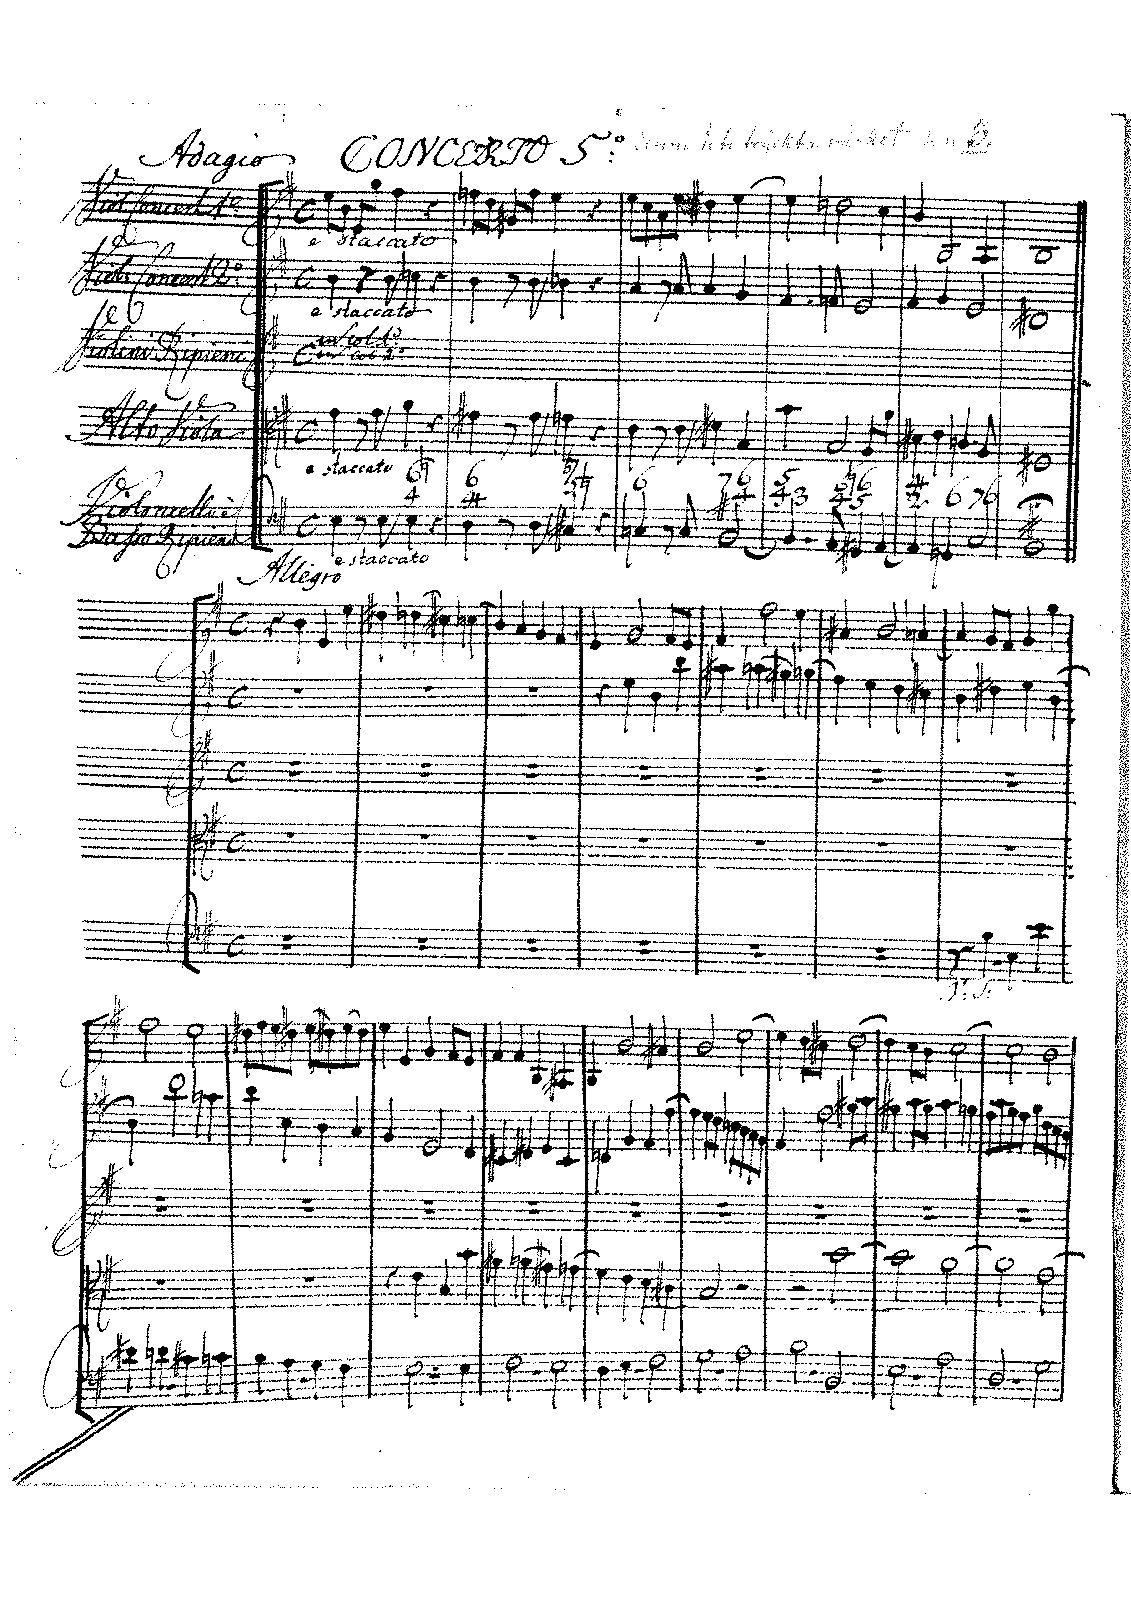 Concerto Grosso in E minor, H.75 (Geminiani, Francesco) - IMSLP